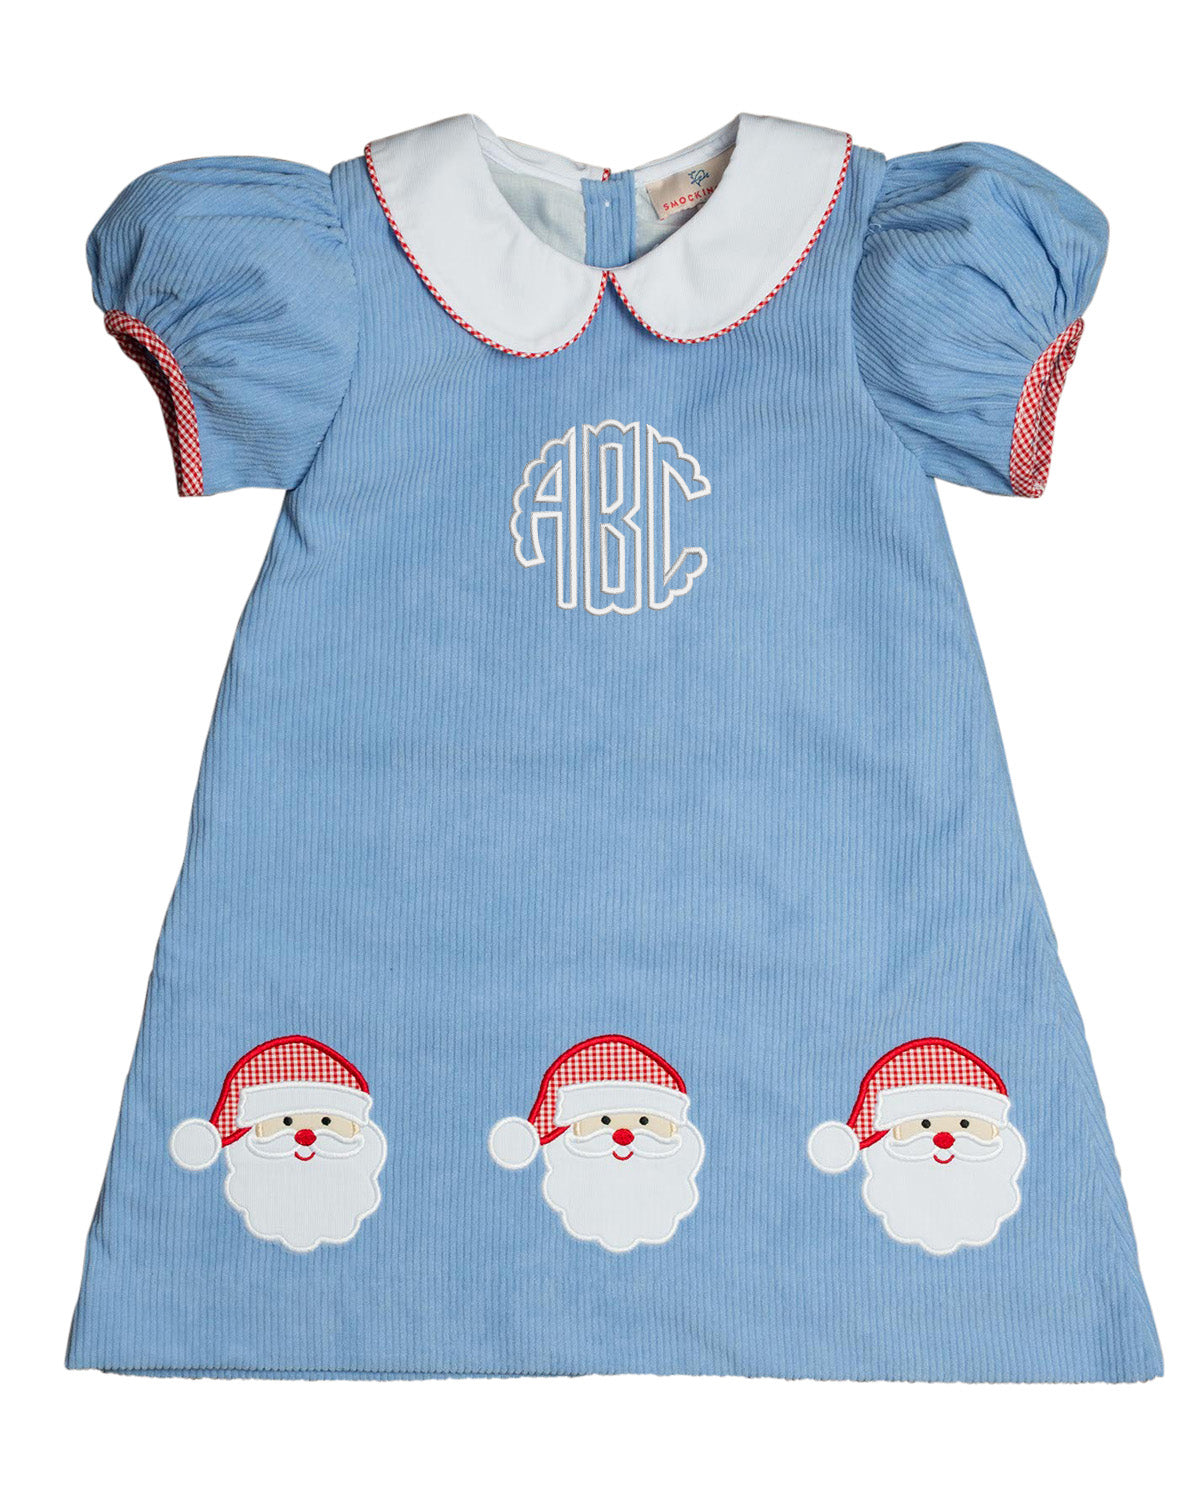 Santa Applique Light Blue Corduroy Dress- FINAL SALE